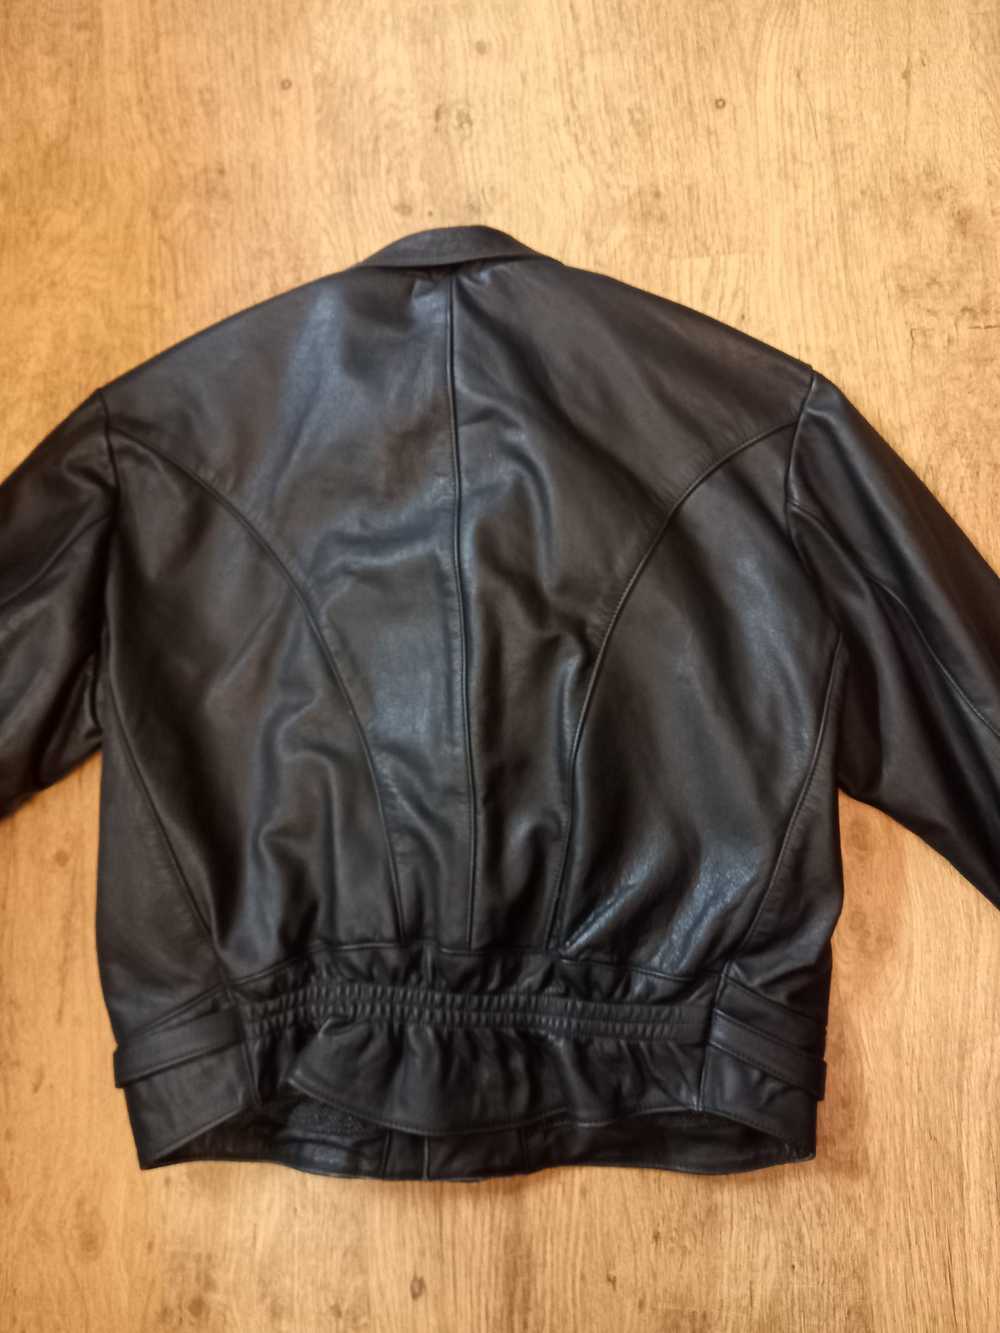 Vintage Vintage 80s Leather Biker Jacket - image 3